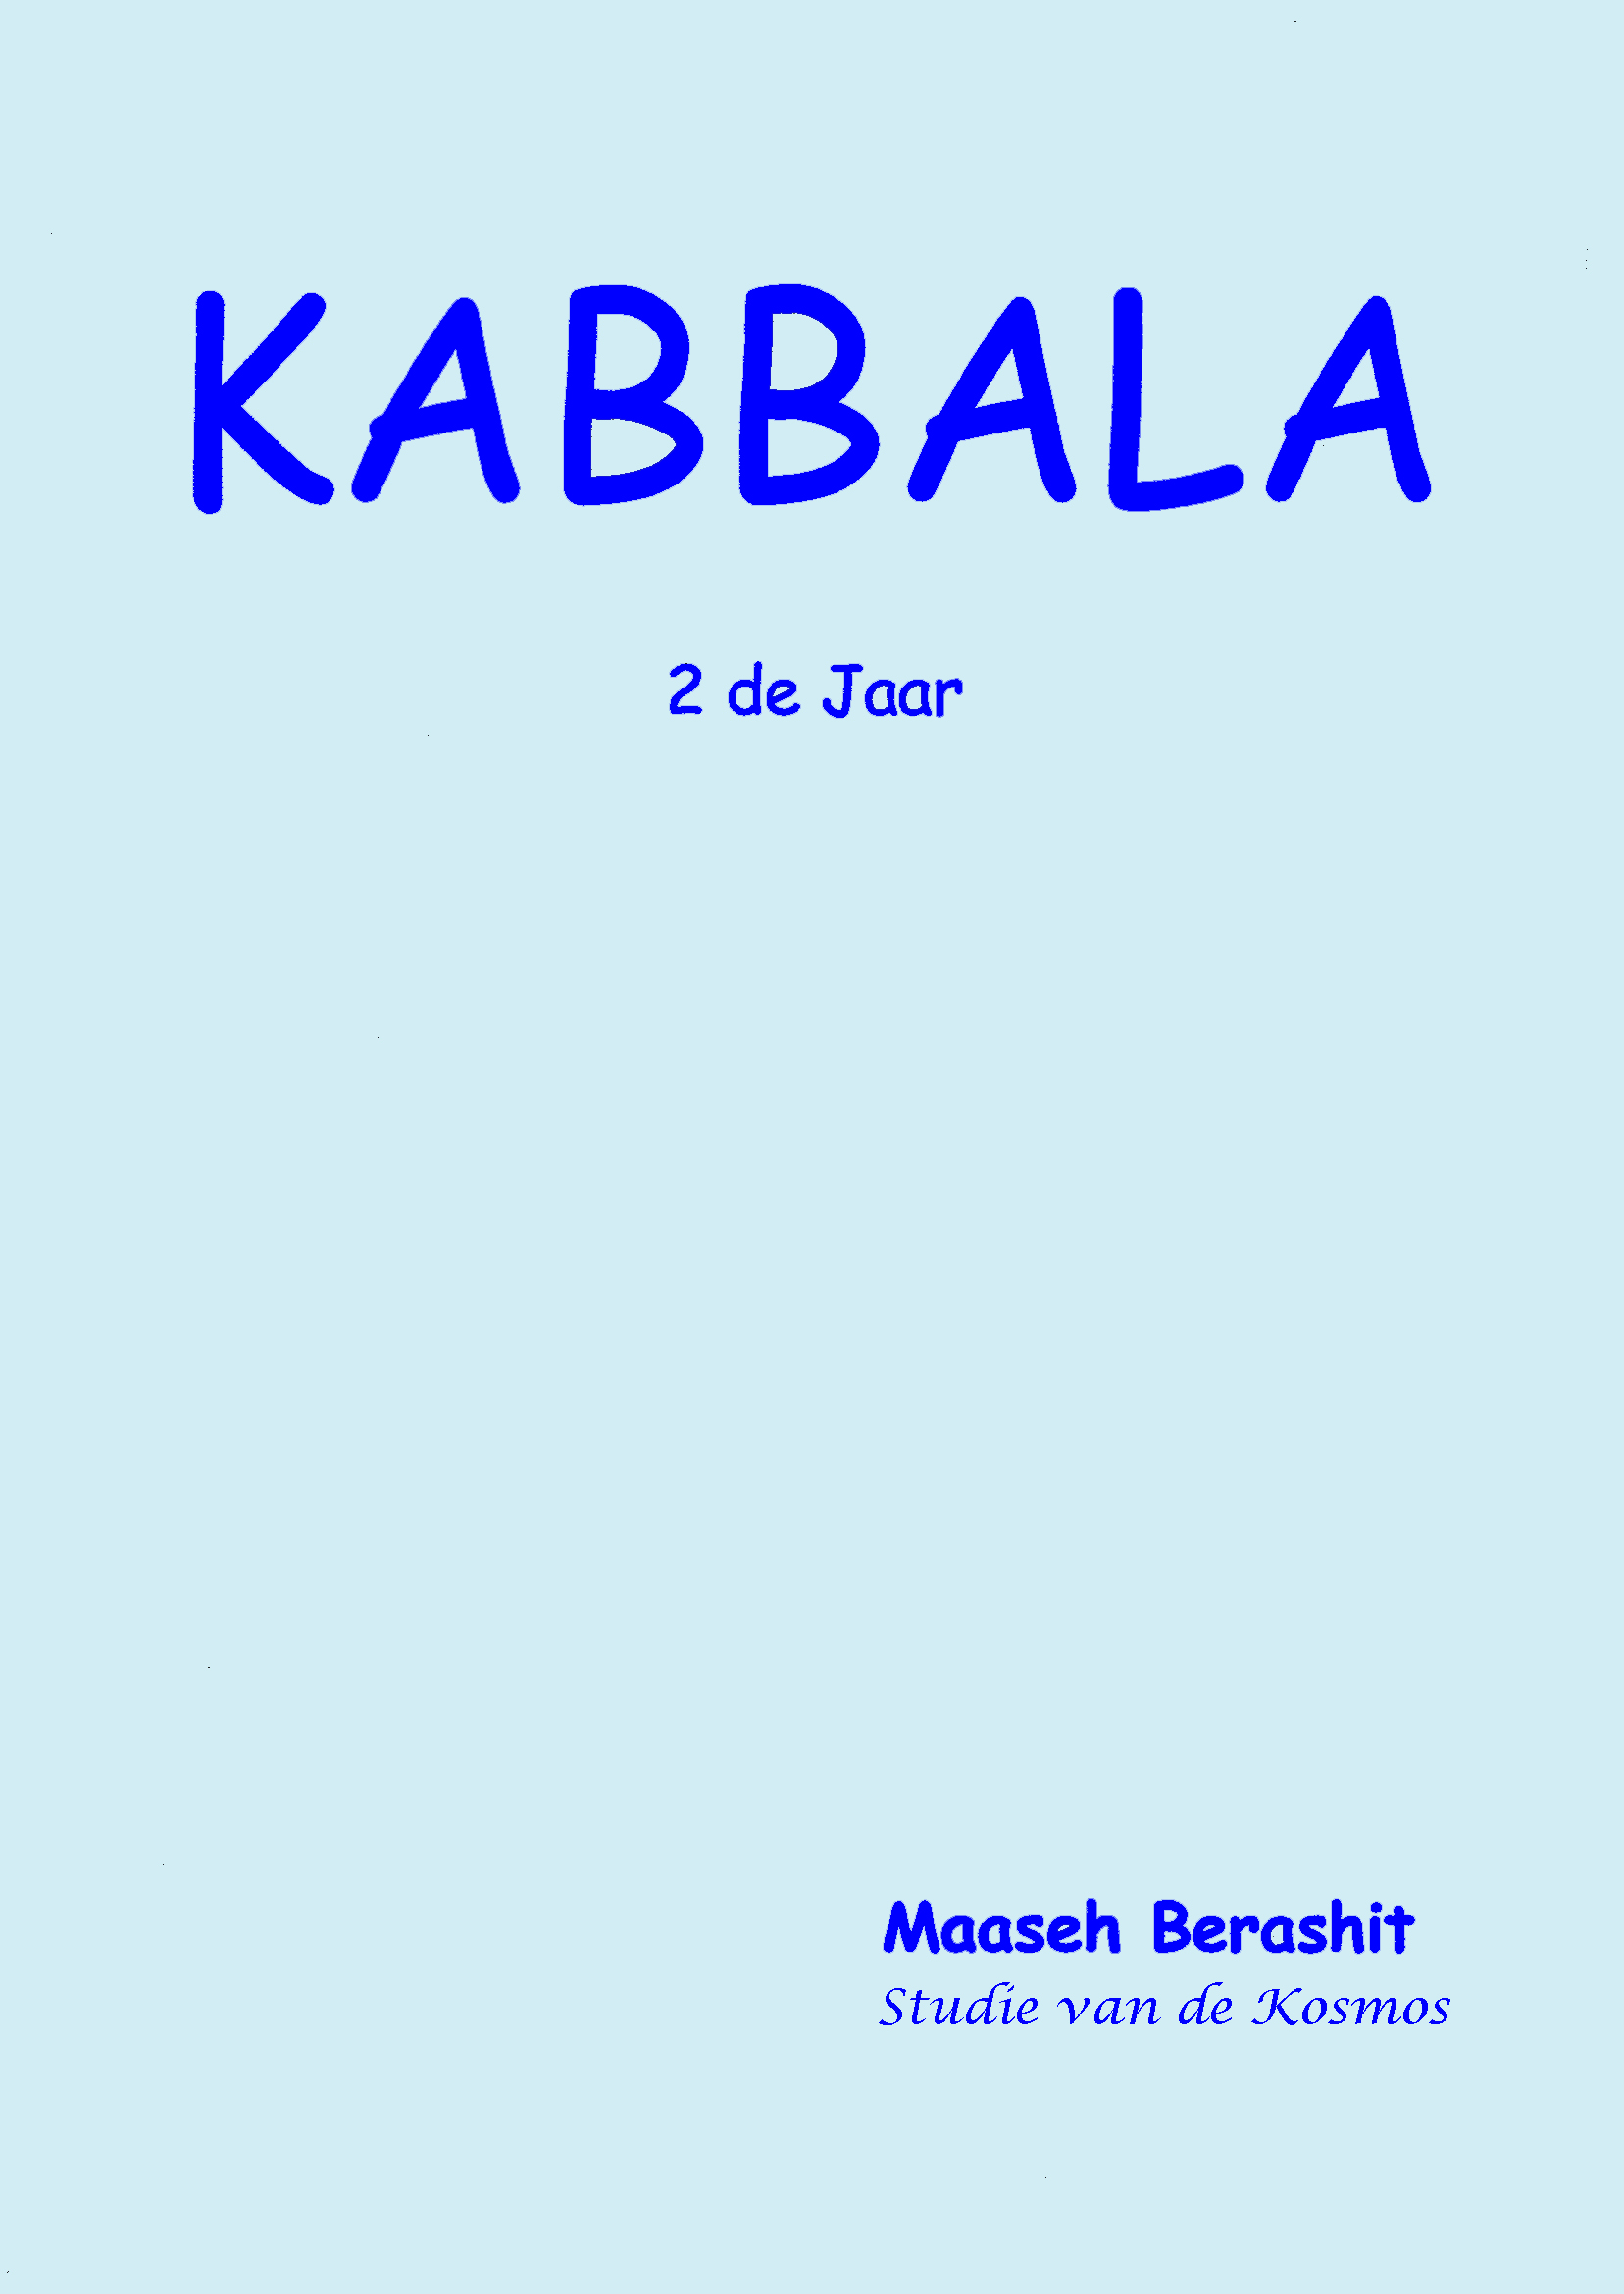 1 Kabbala 2 Jaar